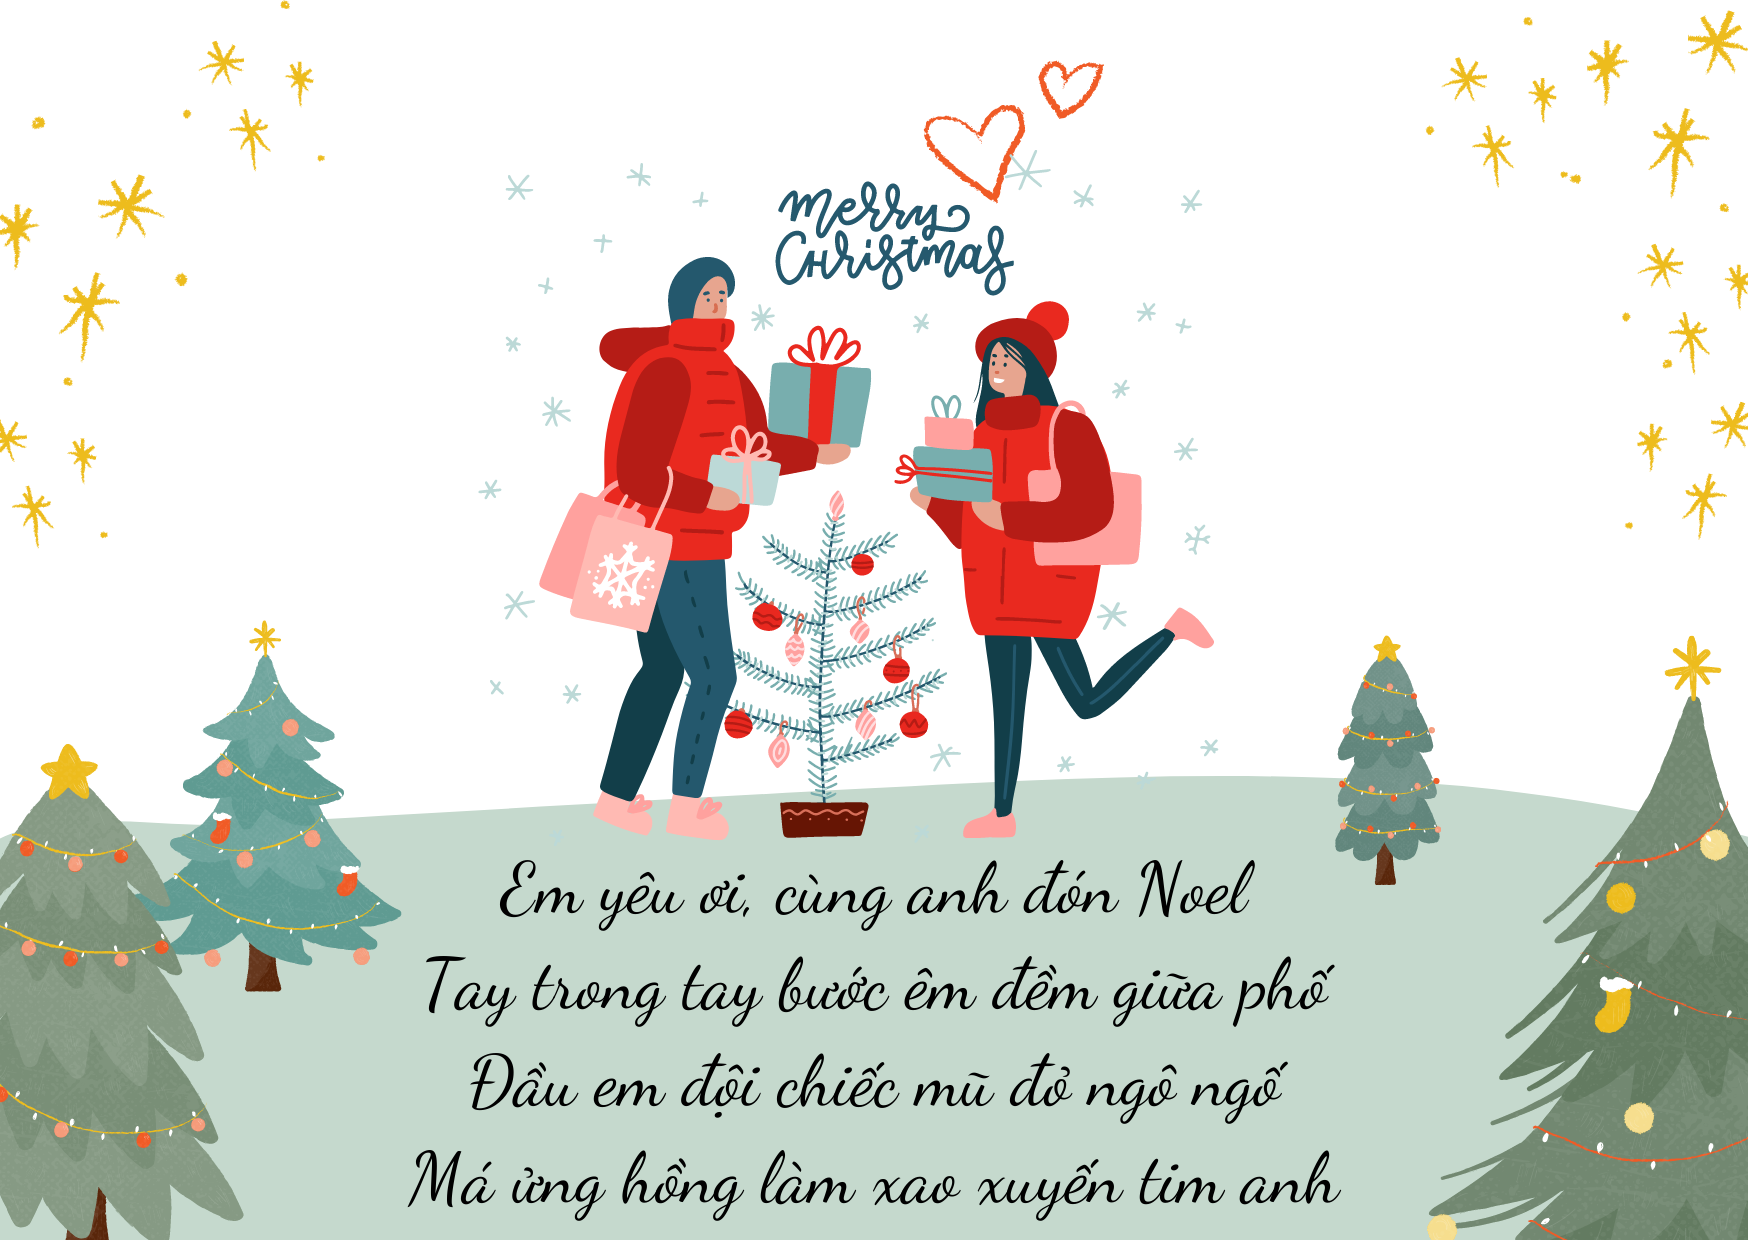 7 bài thơ chúc Giáng sinh người yêu ngắn gọn và ngọt ngào năm 2021 - Ảnh 1.